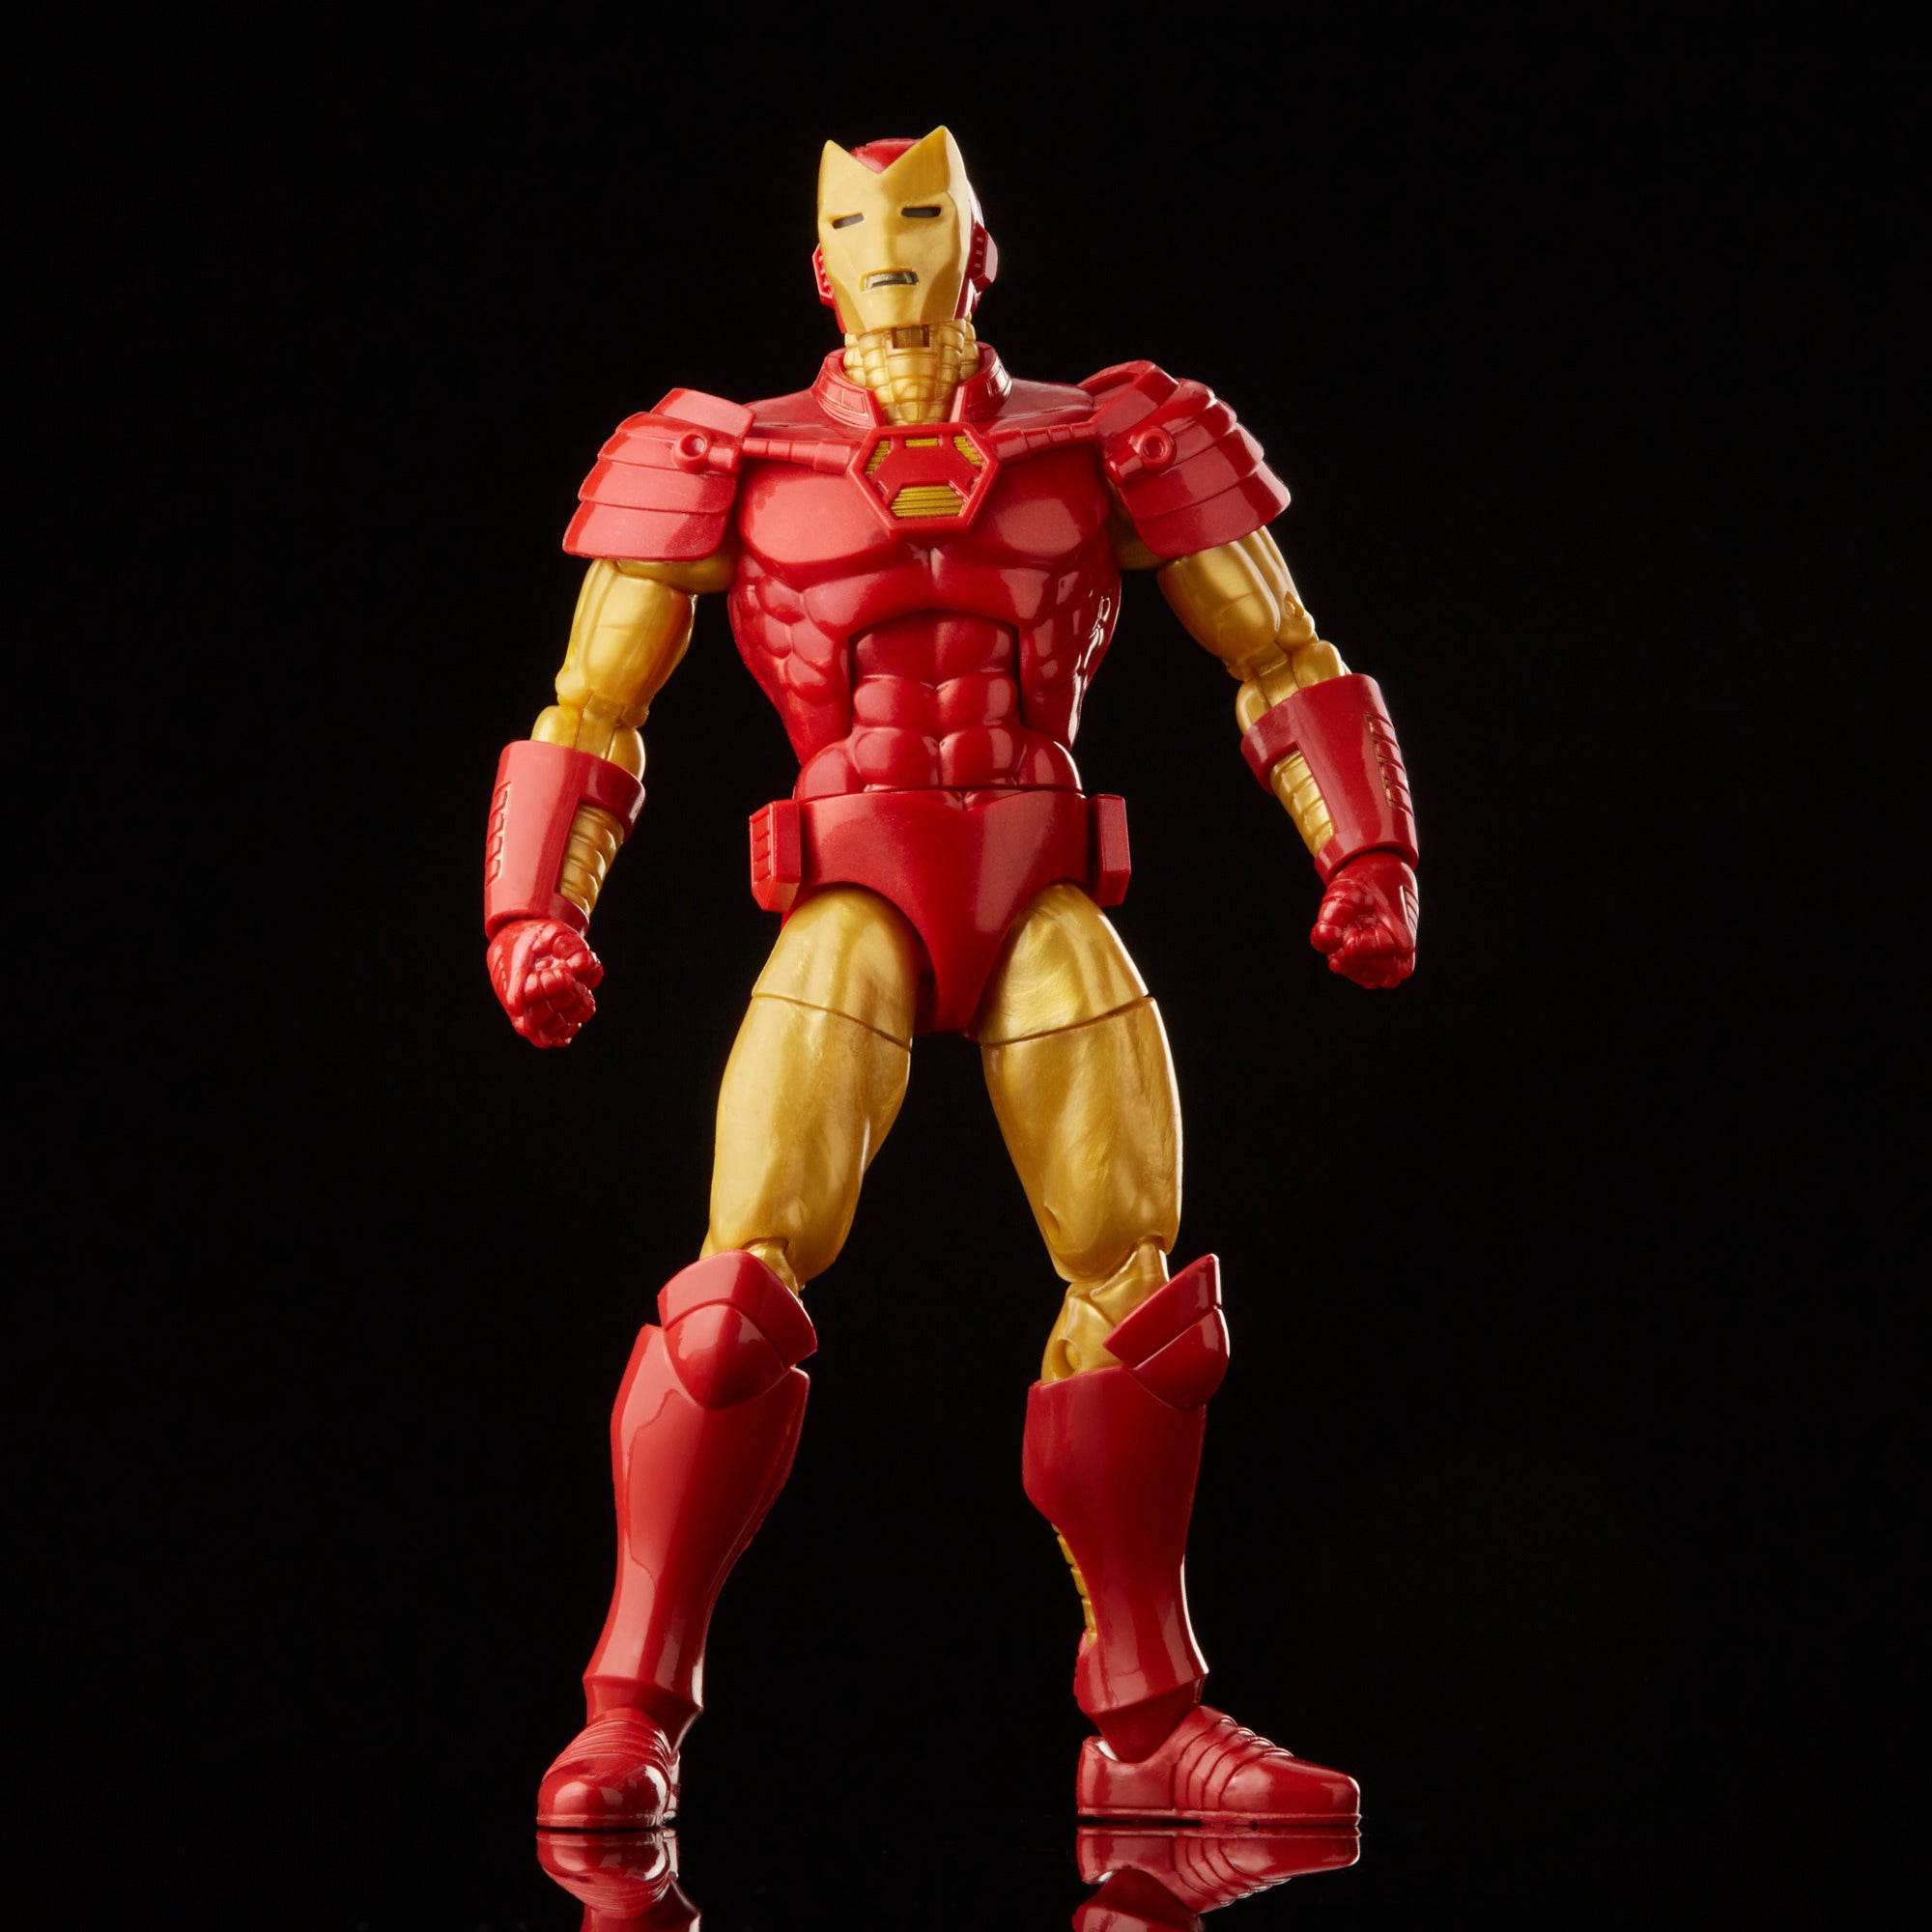 Figurine Iron Man, figurine avengers, figurine marvel